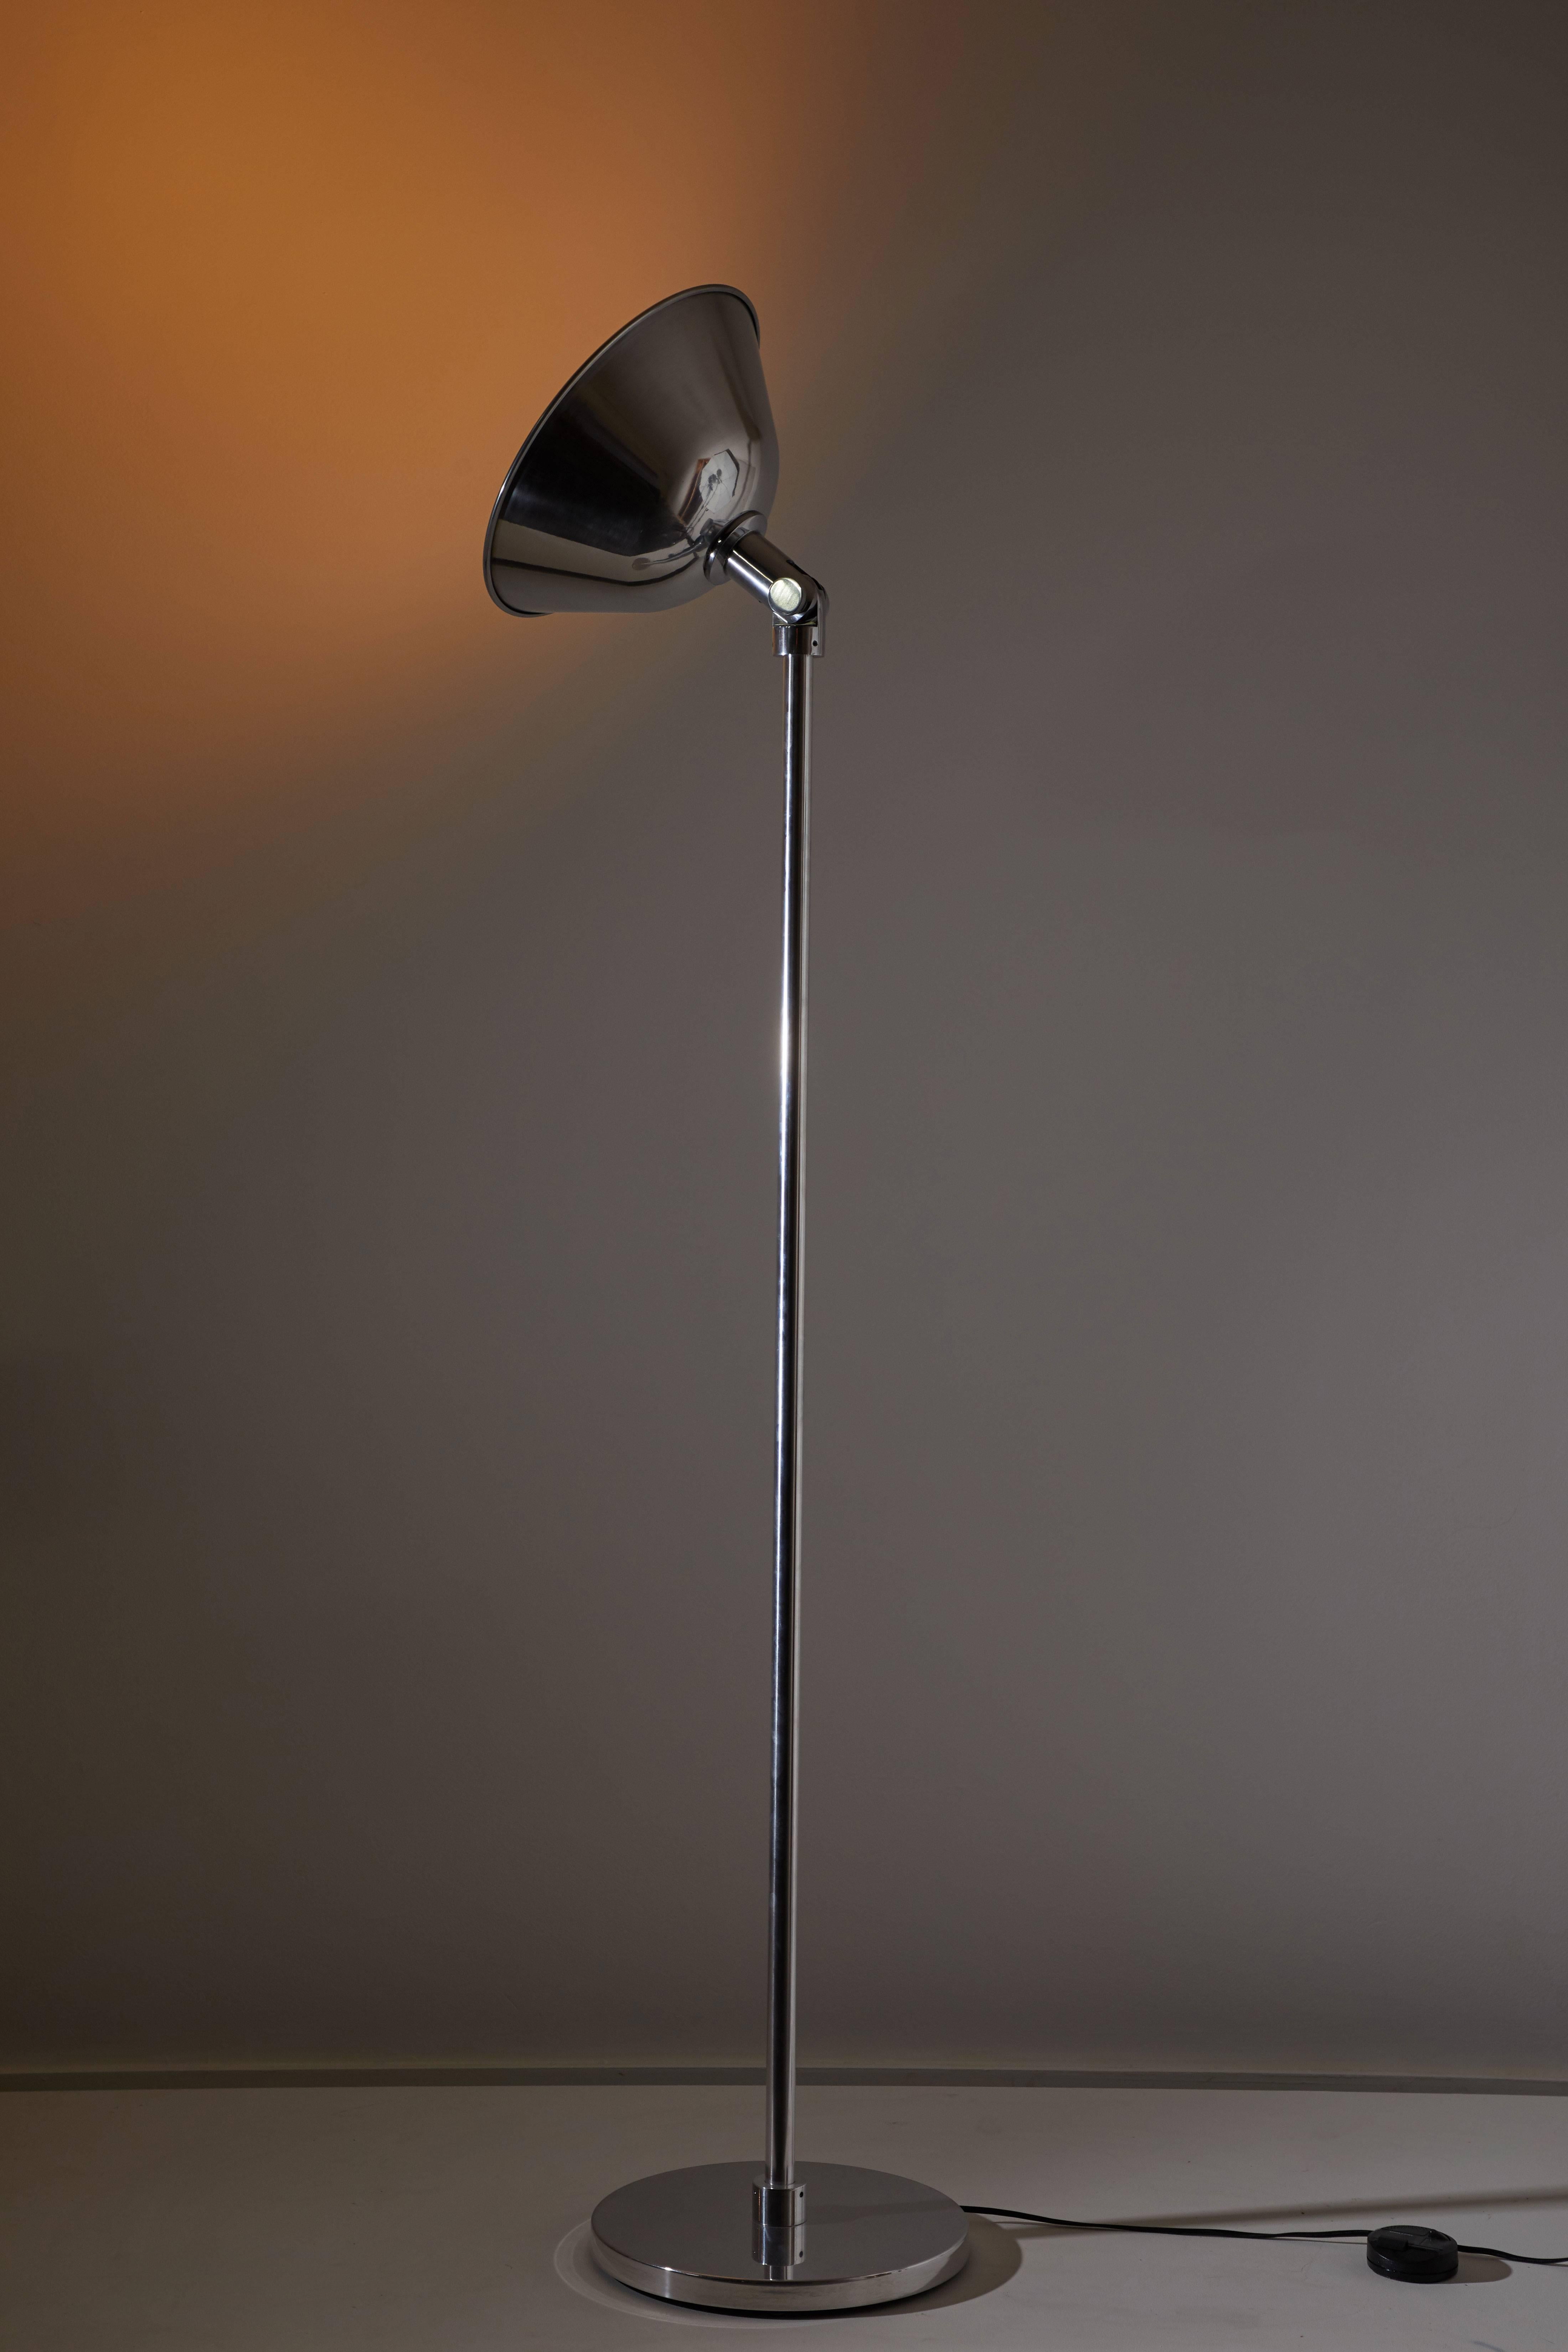 Lampadaire GATCPAC de Josep Torres Clavé pour Santa & Cole, conçu à l'origine en 1931. Ce lampadaire de réédition a une base en métal et une haute tige avec une large section transversale comme une colonne non gainée. Au sommet, une articulation